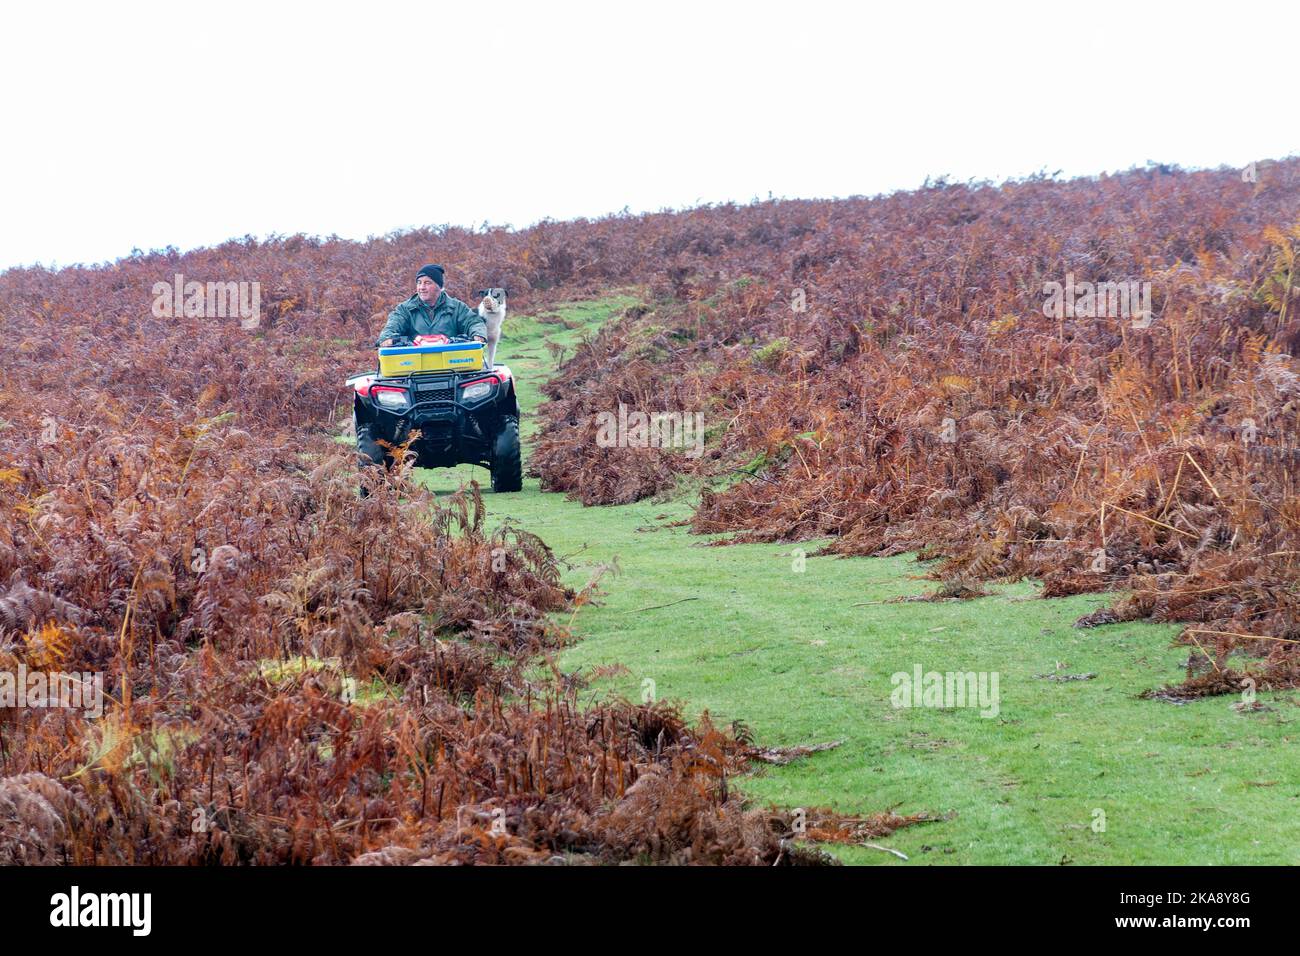 Ein Bauer oder Sheppard, der ein Quad fährt, und ein Collie Sheep Dog, um Schafe in der offenen Landschaft der Brecon Beacons, Wales, Großbritannien, zu pflegen. Stockfoto